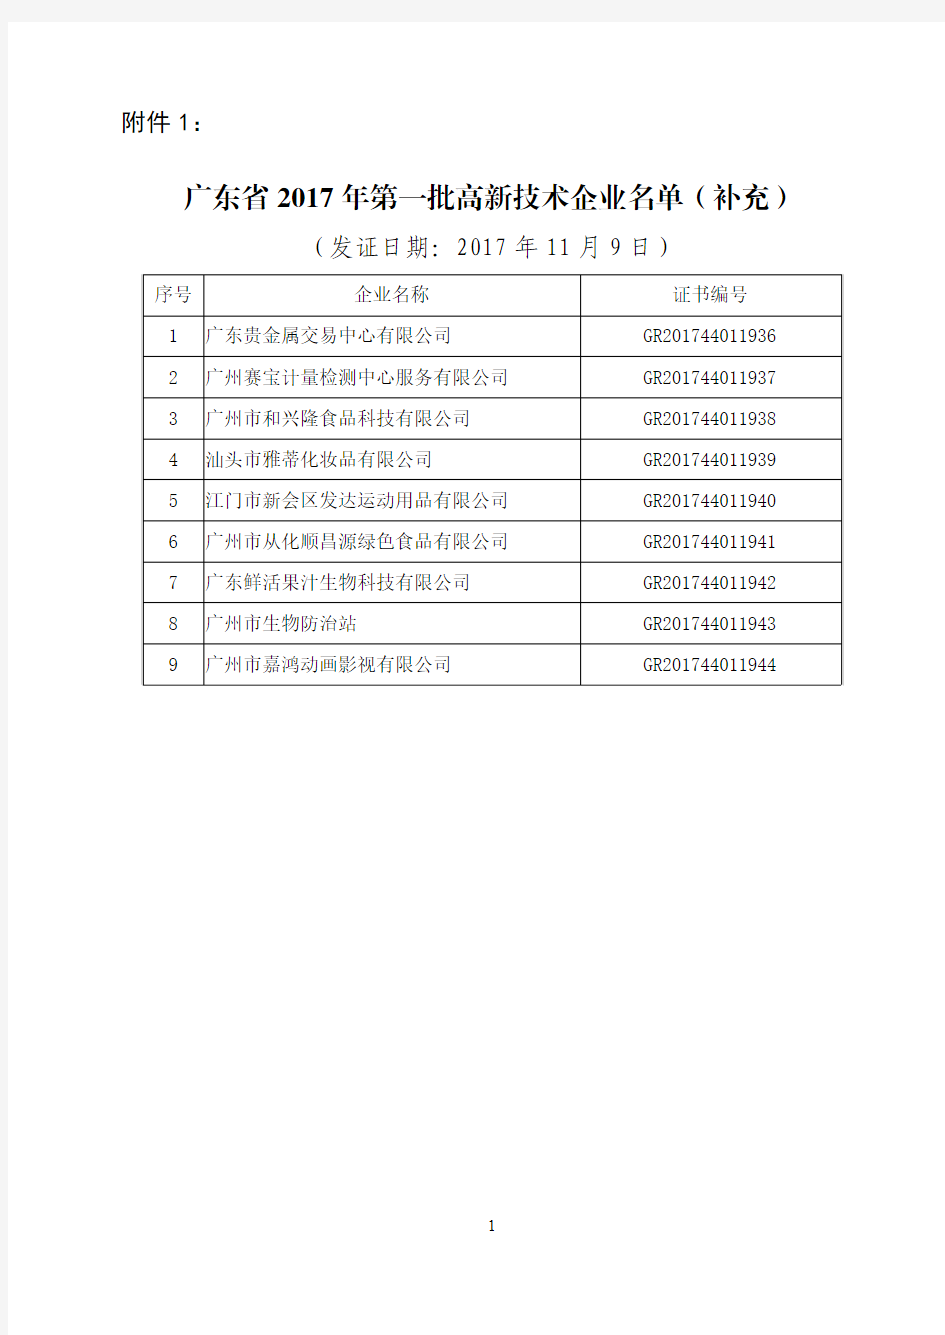 广东省 2017 年第一批高新技术企业名单(补充)